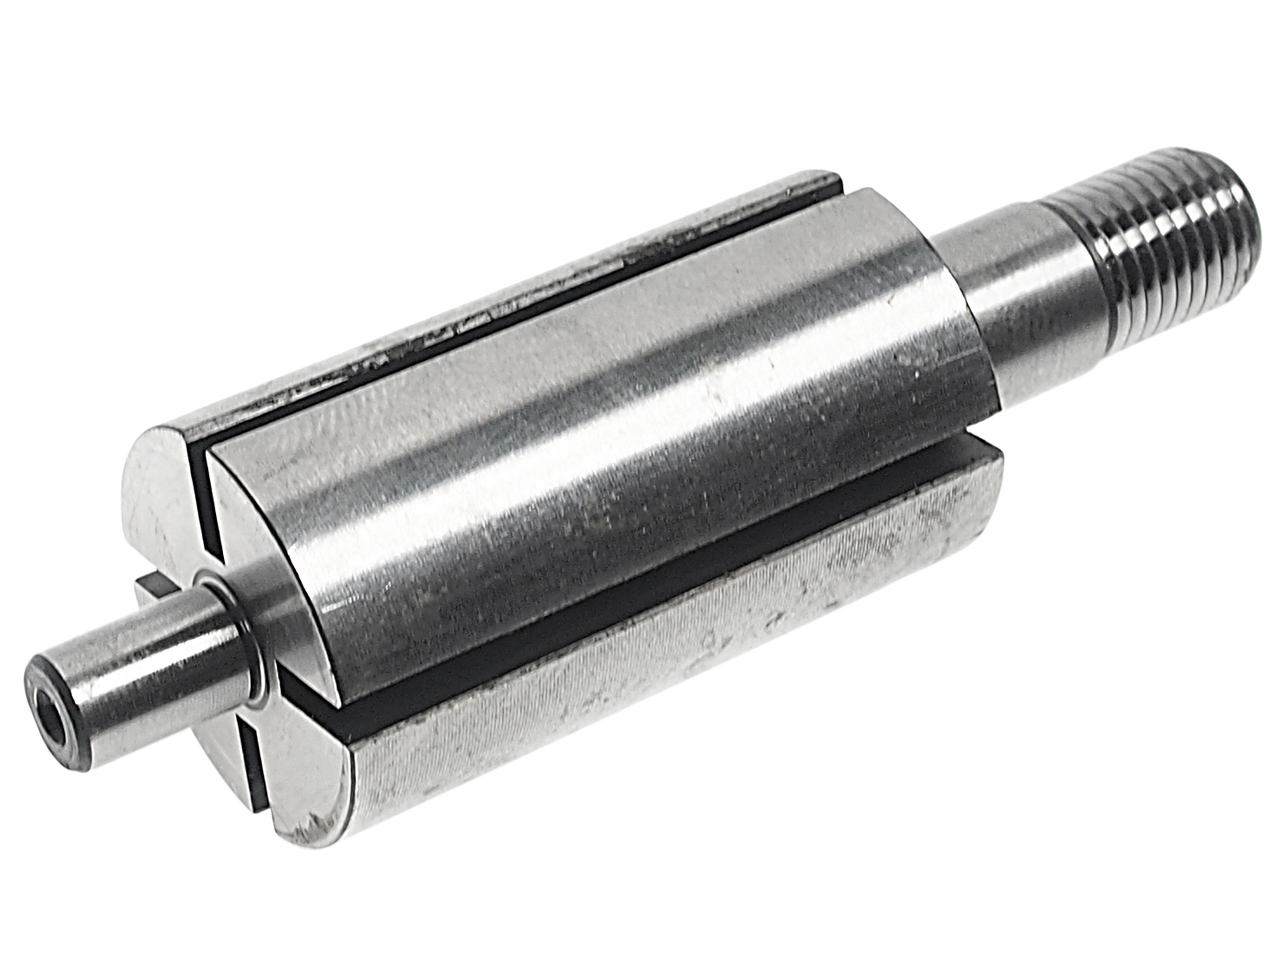 Ремкомплект для ножа пневматического JTC-3830 (19) подшипник JTC